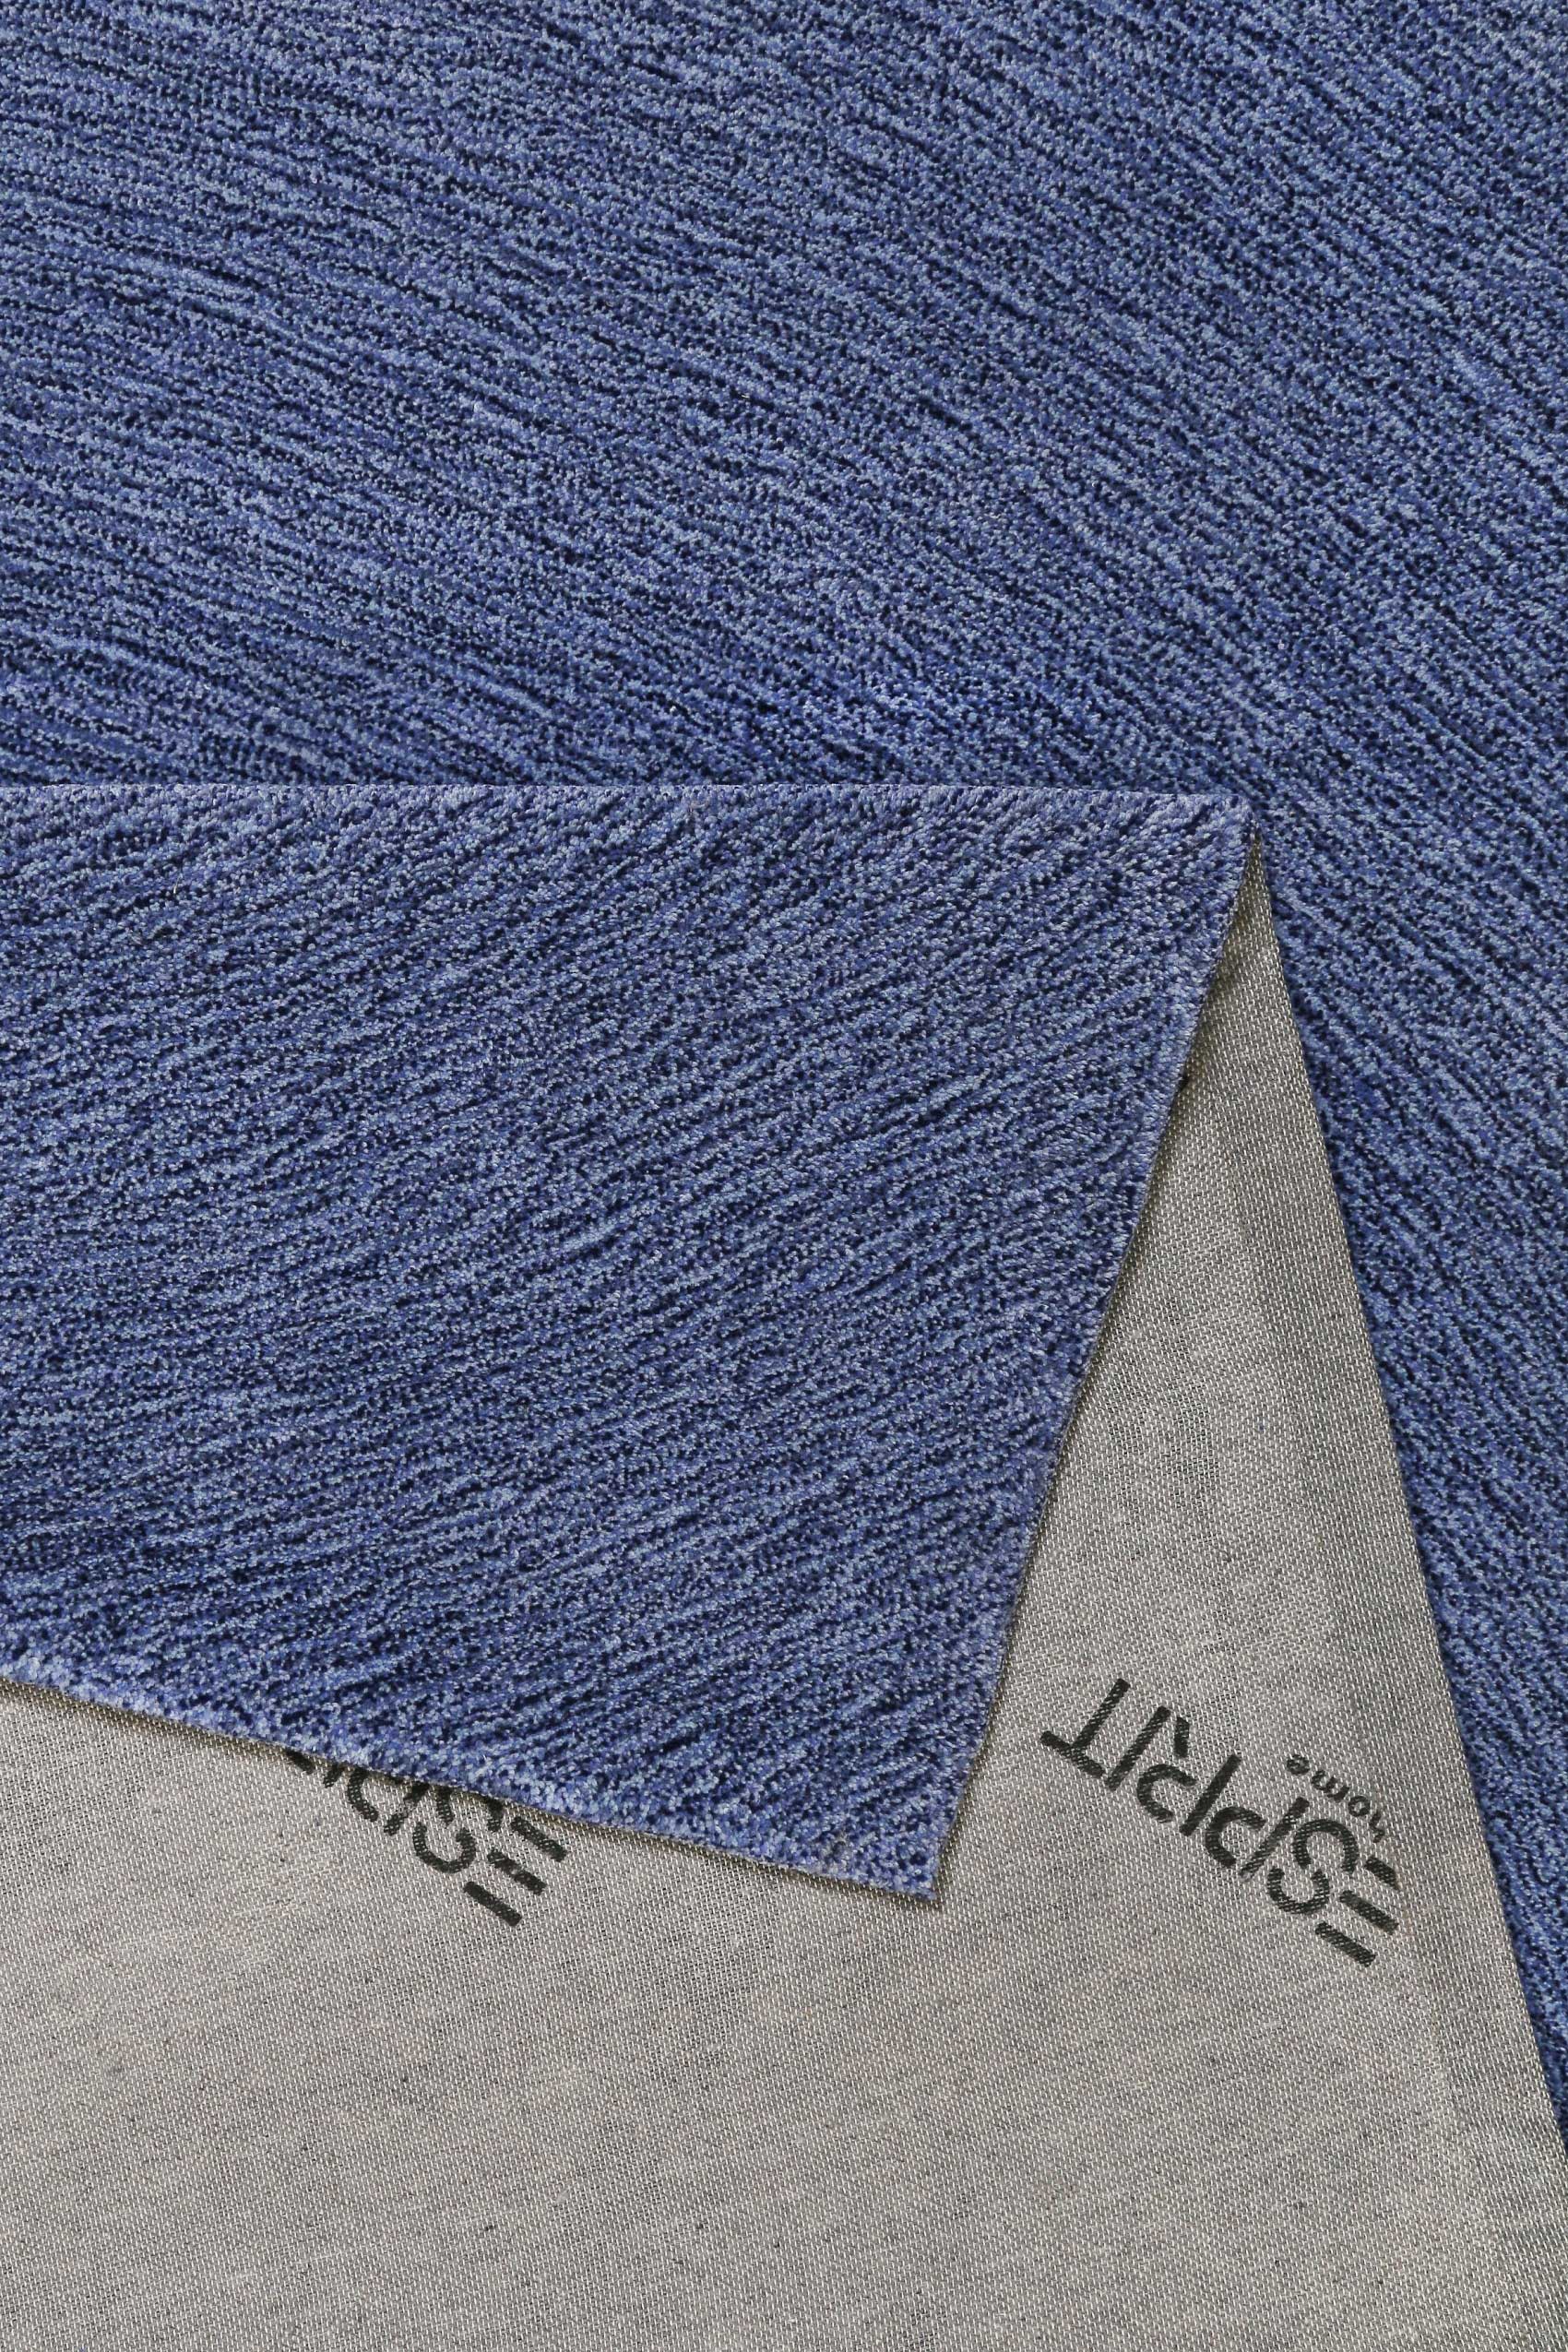 Esprit Teppich Blau meliert aus Wolle » Colour In Motion « - Ansicht 3